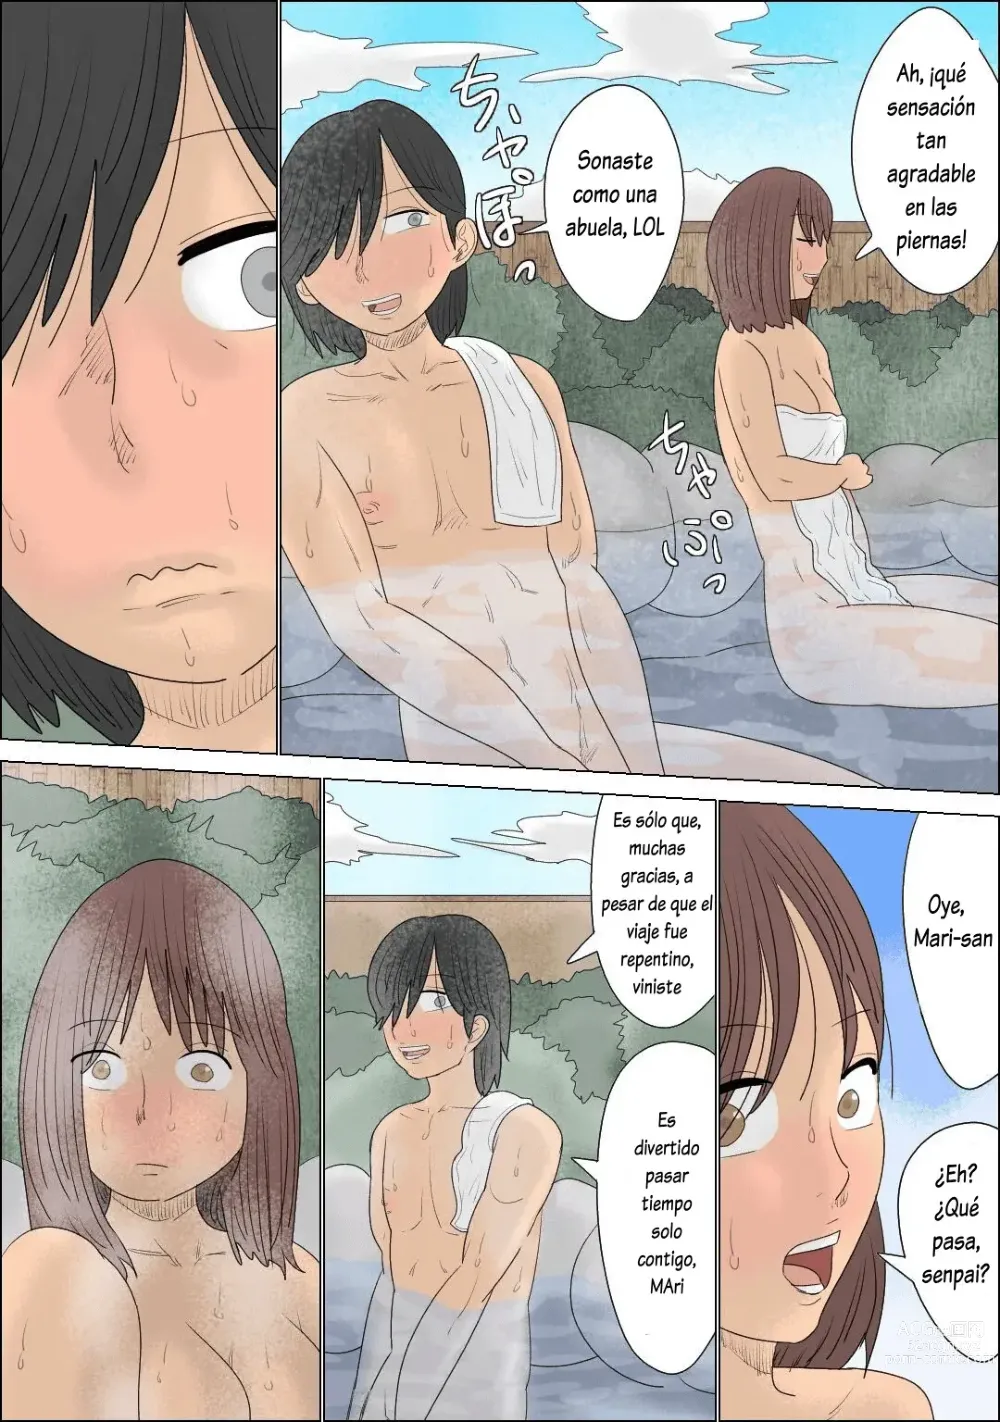 Page 5 of doujinshi Enfrente de ella, fui atacado por dos mujeres durante un viaje a las aguas termales